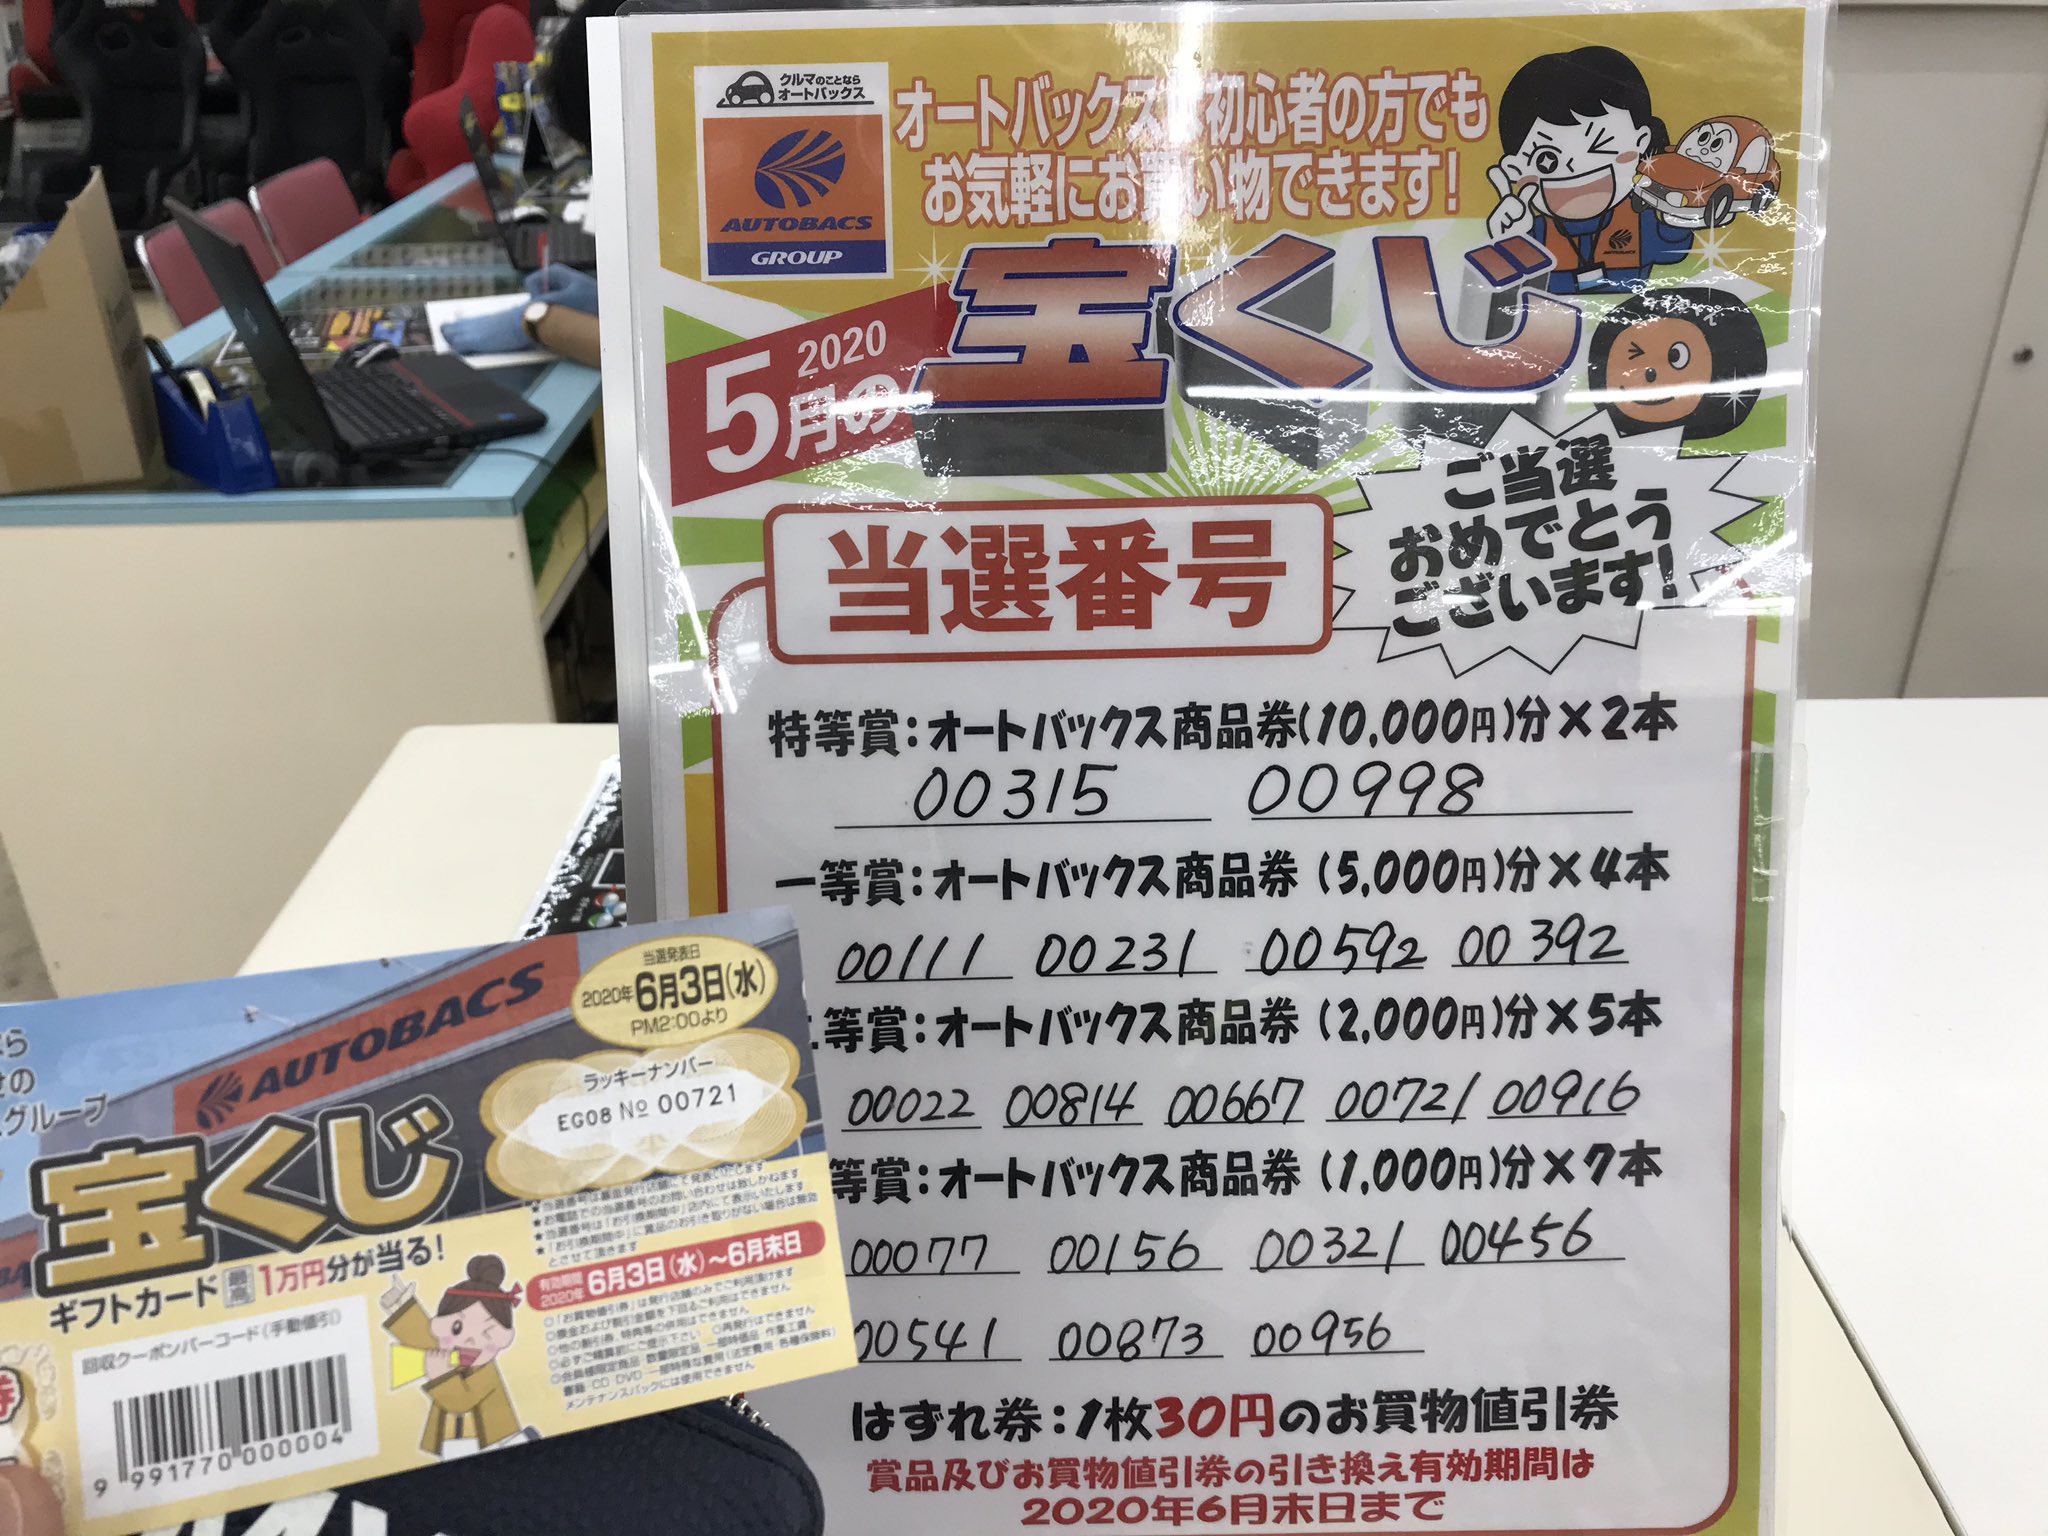 hiyopapa on Twitter: "先月、たまたま行った スーパーオートバックス高槻店で 宝くじを貰い、じかんがあったので当選番号の確認へ…2等賞の ¥2,000-分の商品券が当たって